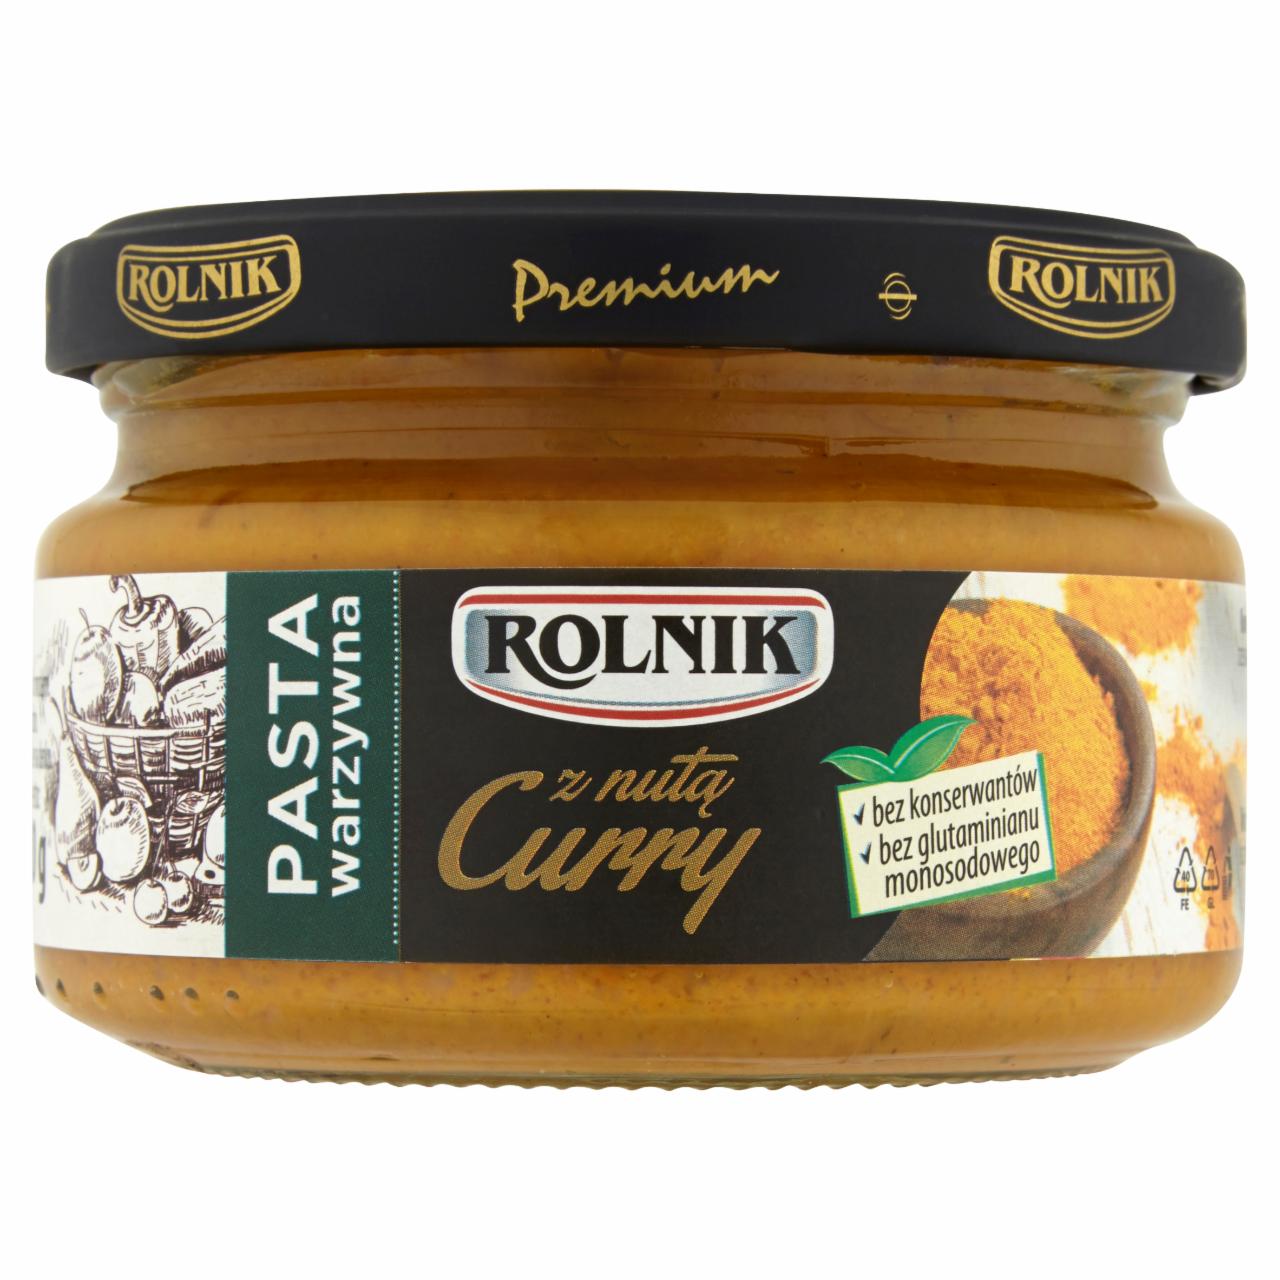 Zdjęcia - Rolnik Premium Pasta warzywna z nutą curry 190 g